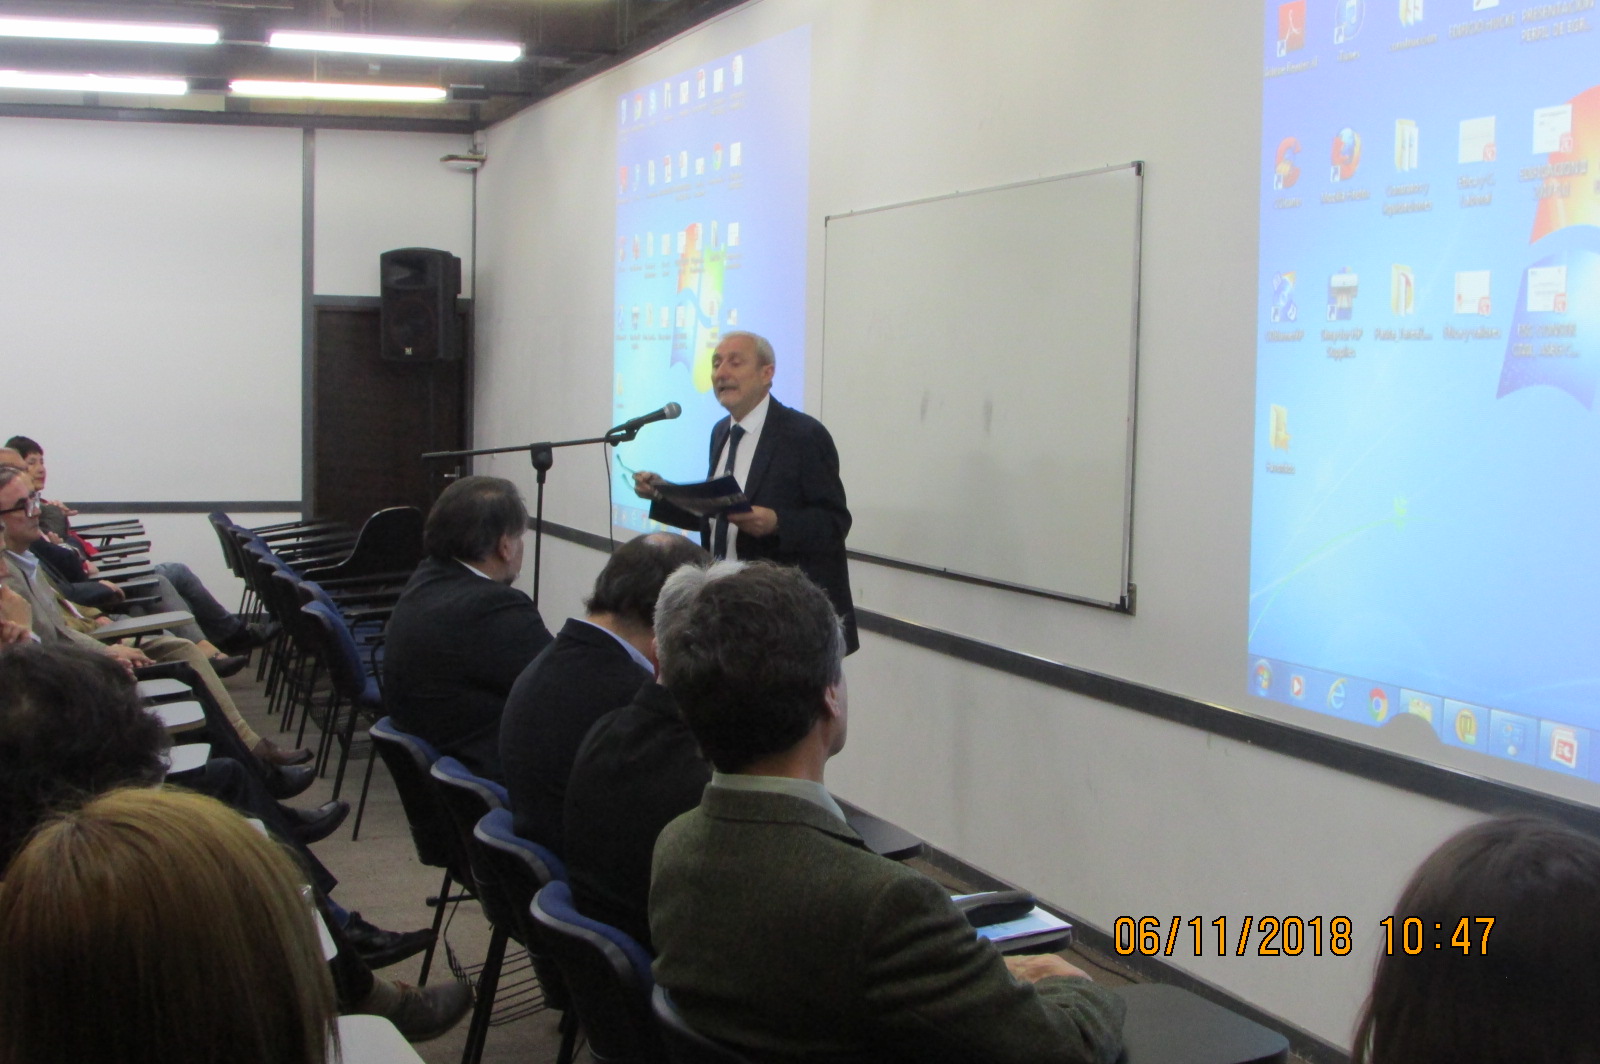 Palabras del Rector de la Universidad de Valparaíso, señor Aldo Valle Acevedo